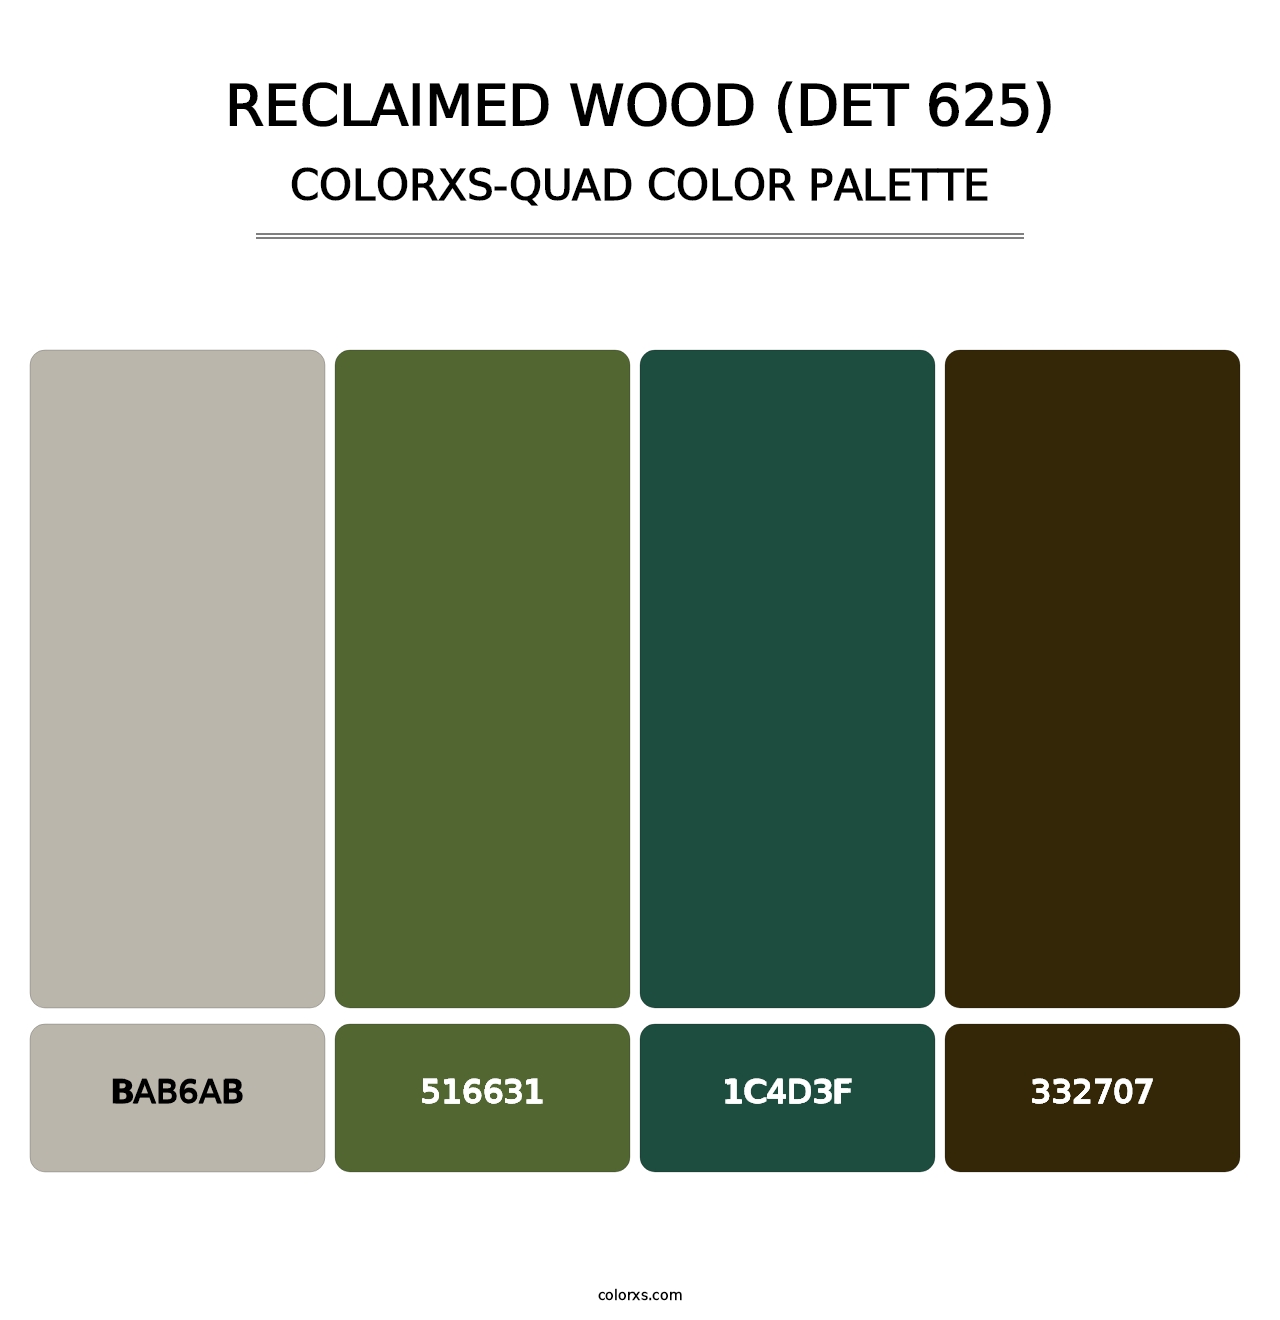 Reclaimed Wood (DET 625) - Colorxs Quad Palette